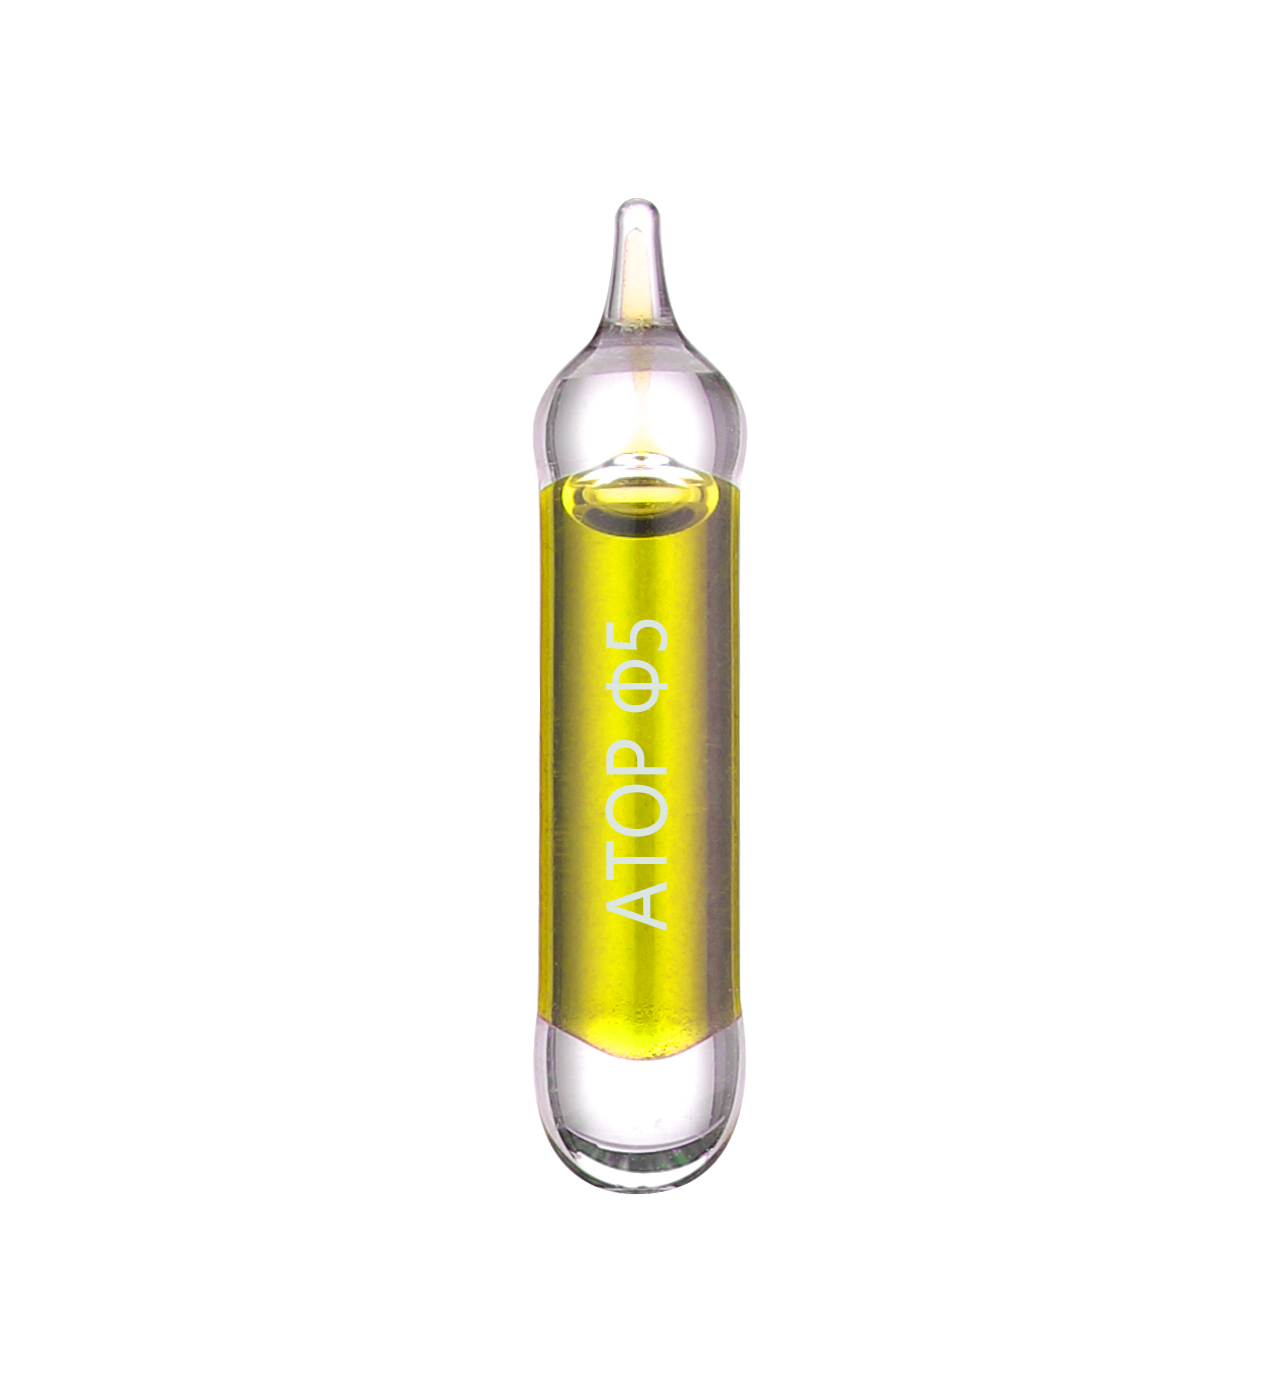 5mm Sprinkler sijalice specijalnog odziva